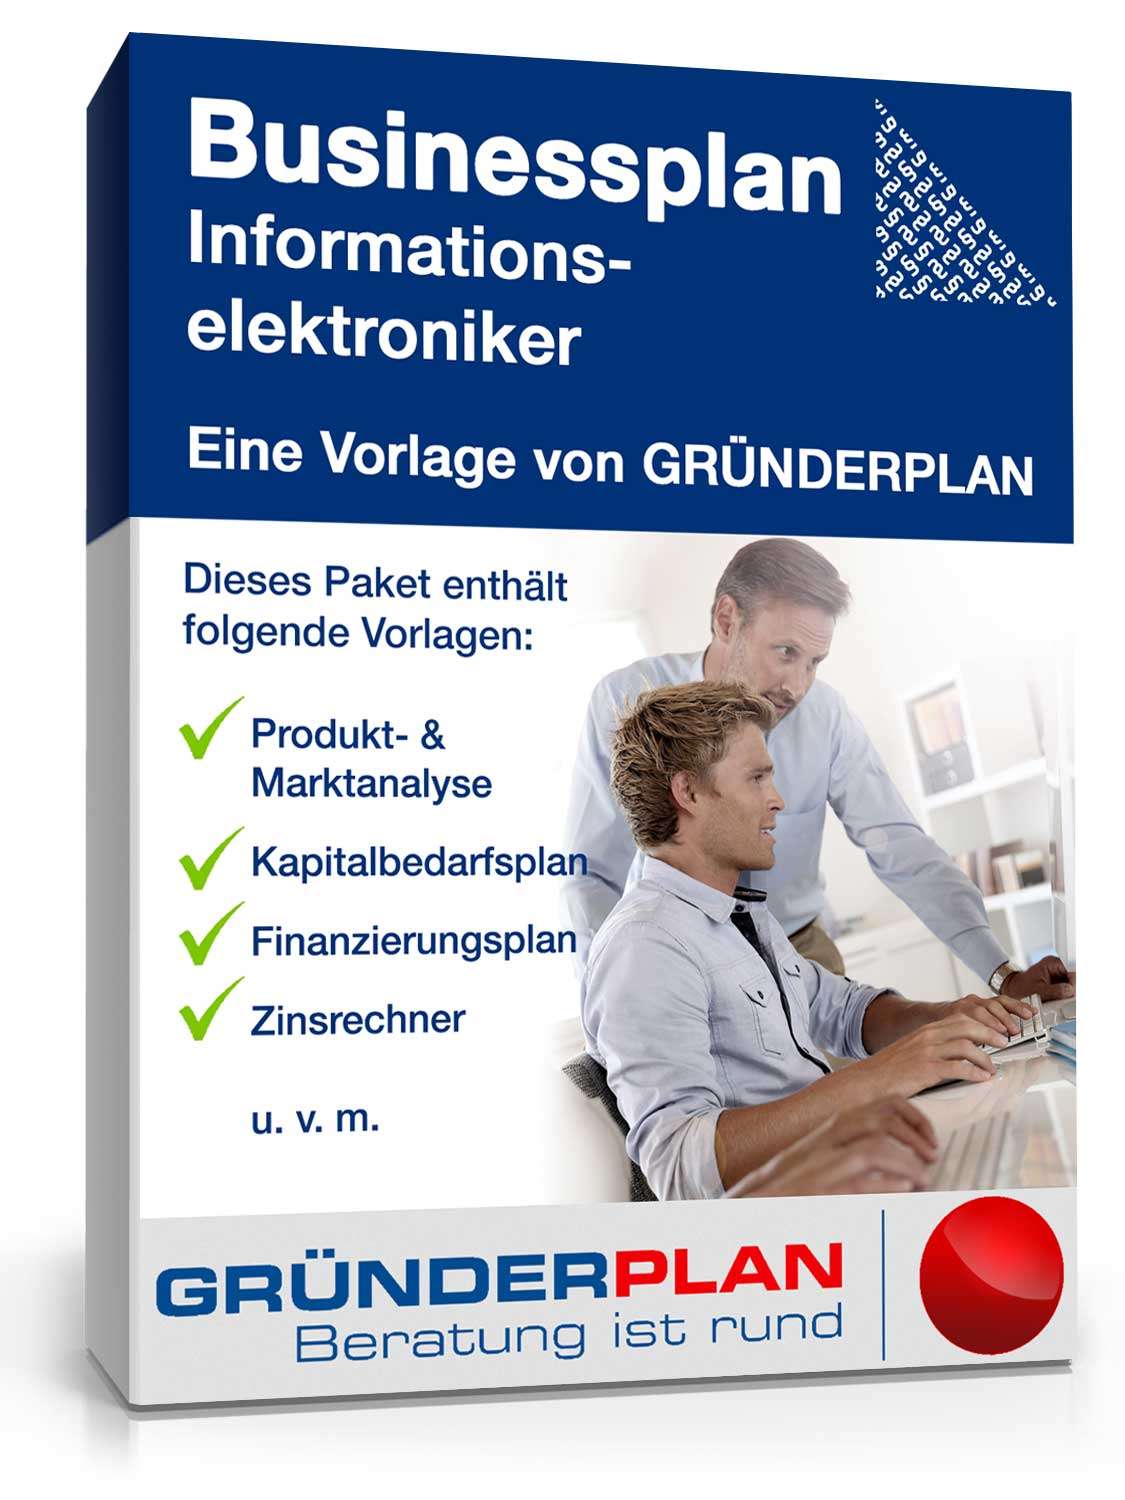 Hauptbild des Produkts: Businessplan Informationselektroniker von Gründerplan